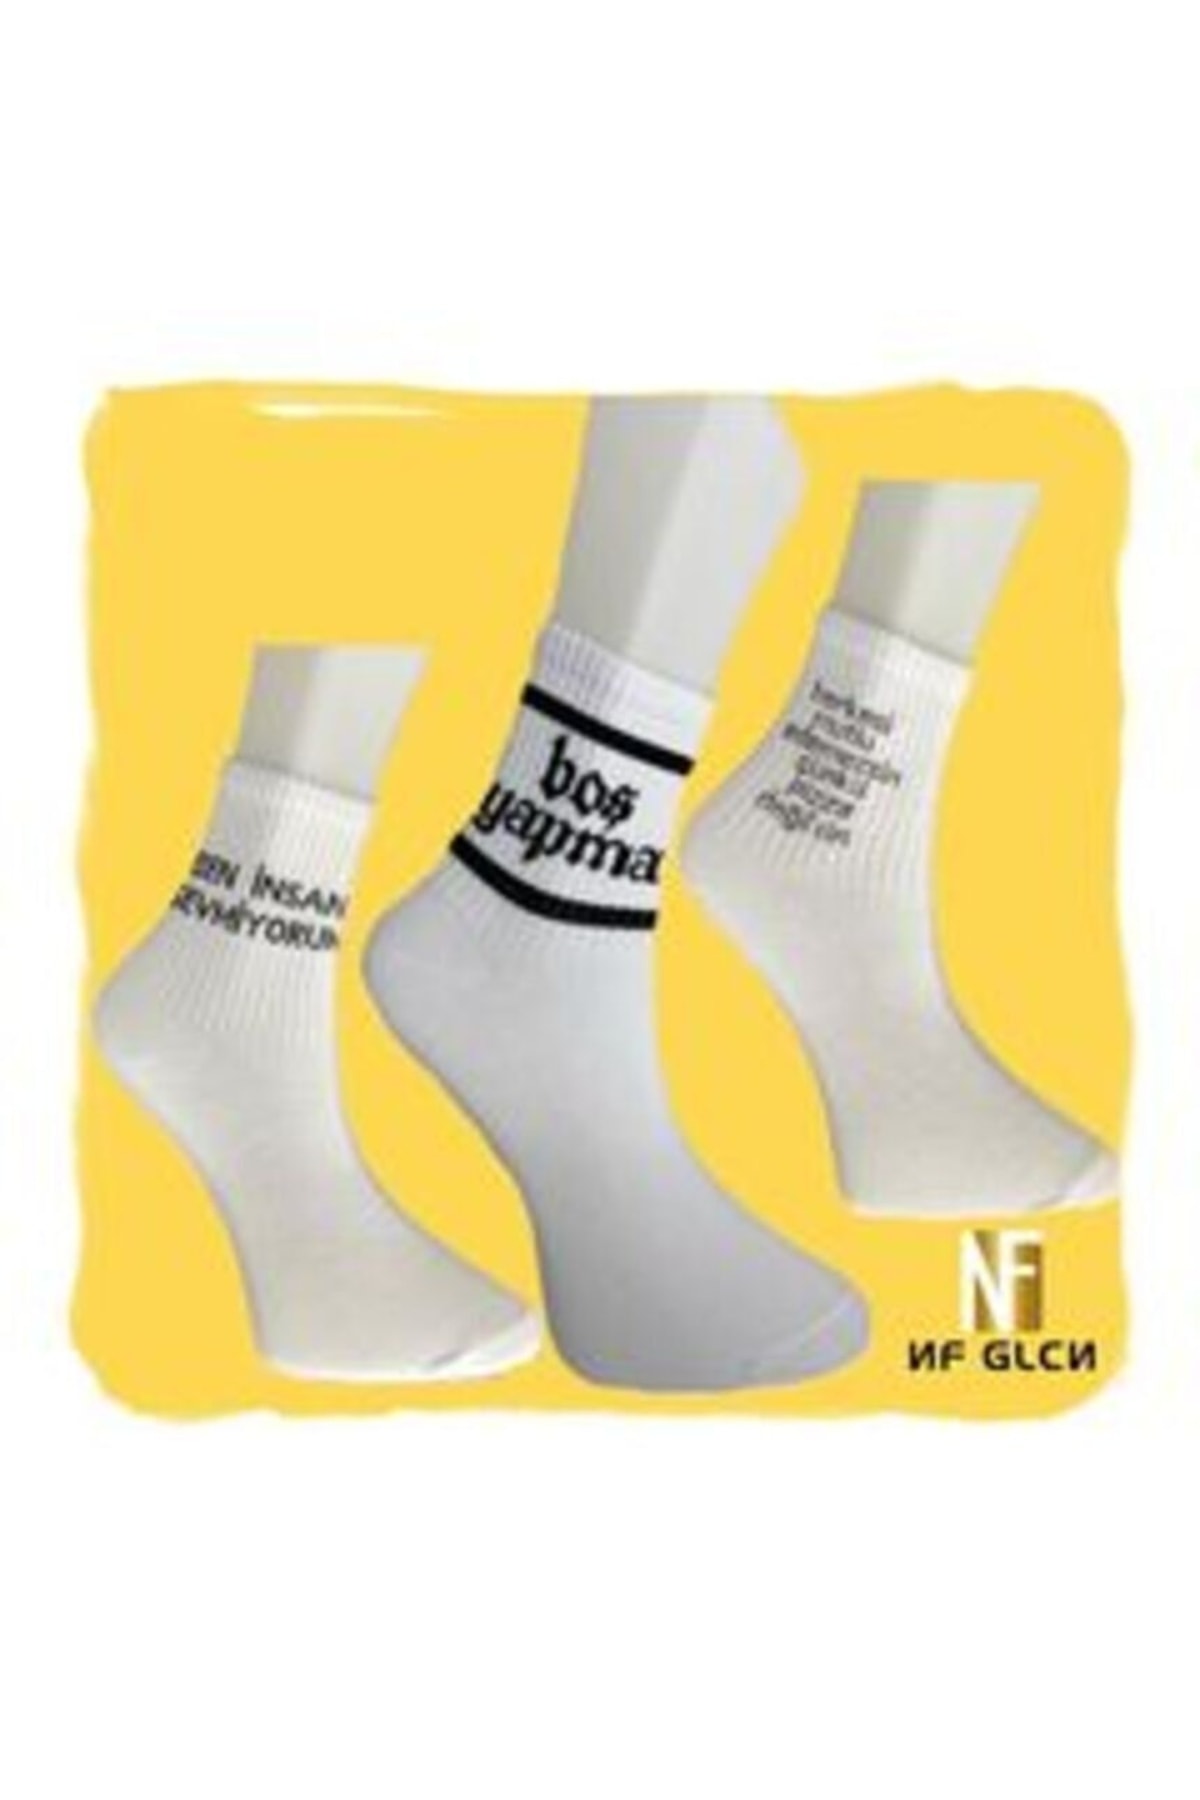 NF GLCN Nf-glcn Beyaz Kısa Kolej Çoraplar (YAZILI)